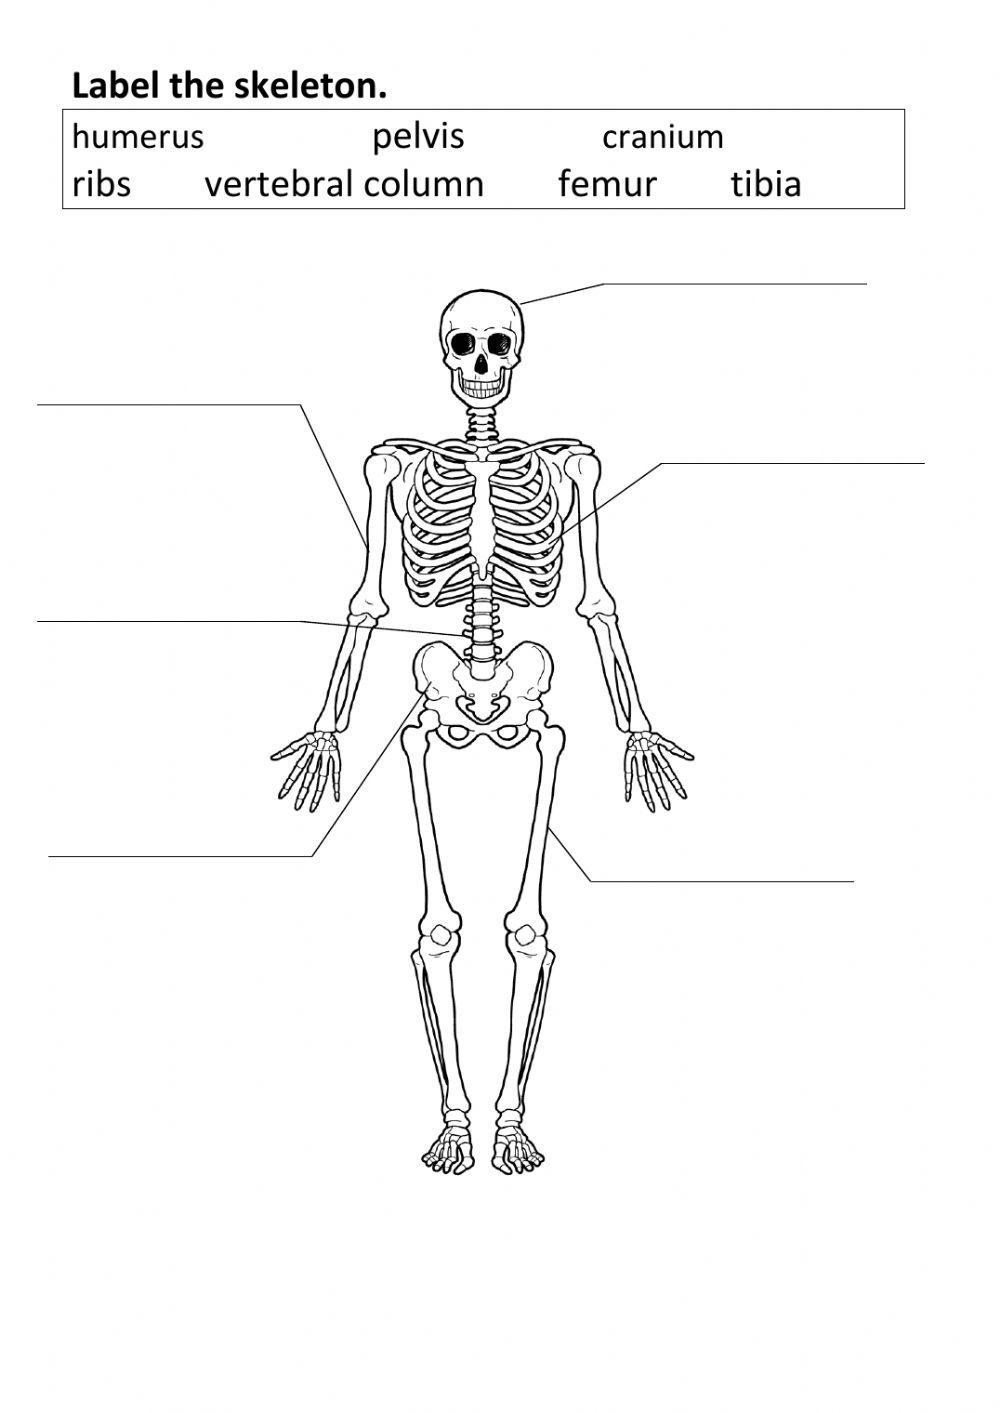 Label the bones